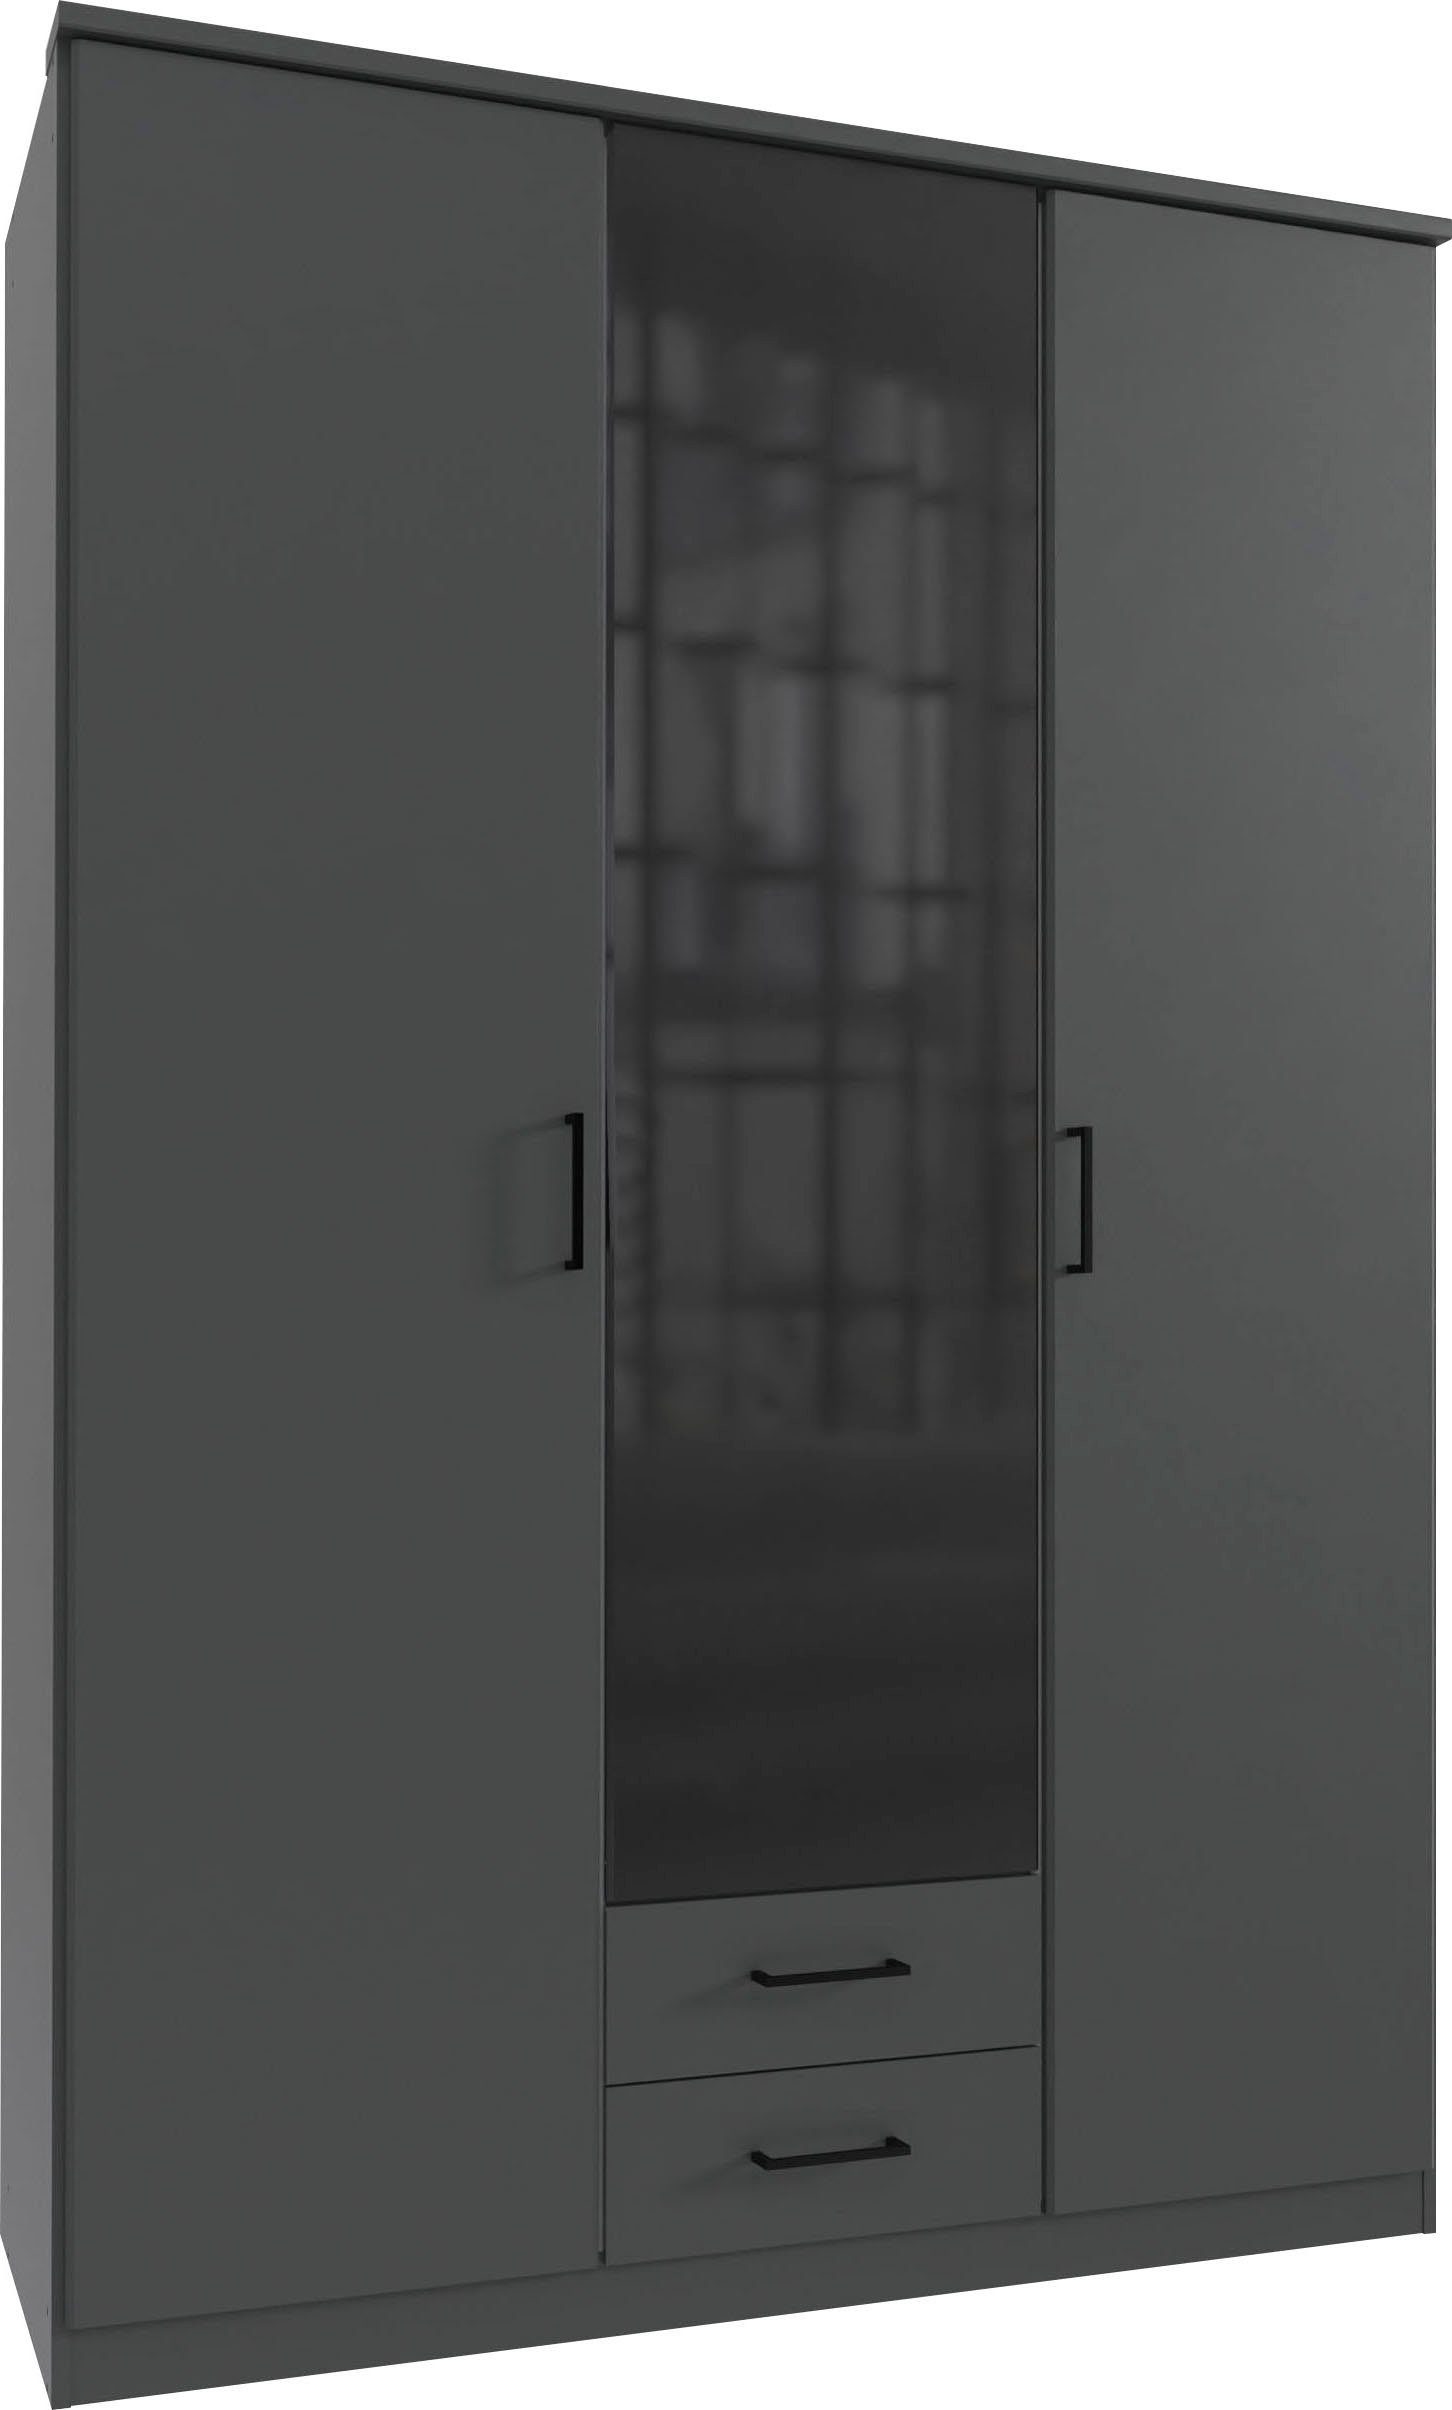 Soest Farbglas-Tür, Drehtürenschrank 180cm oder wahlweise breit 135 Wimex mit